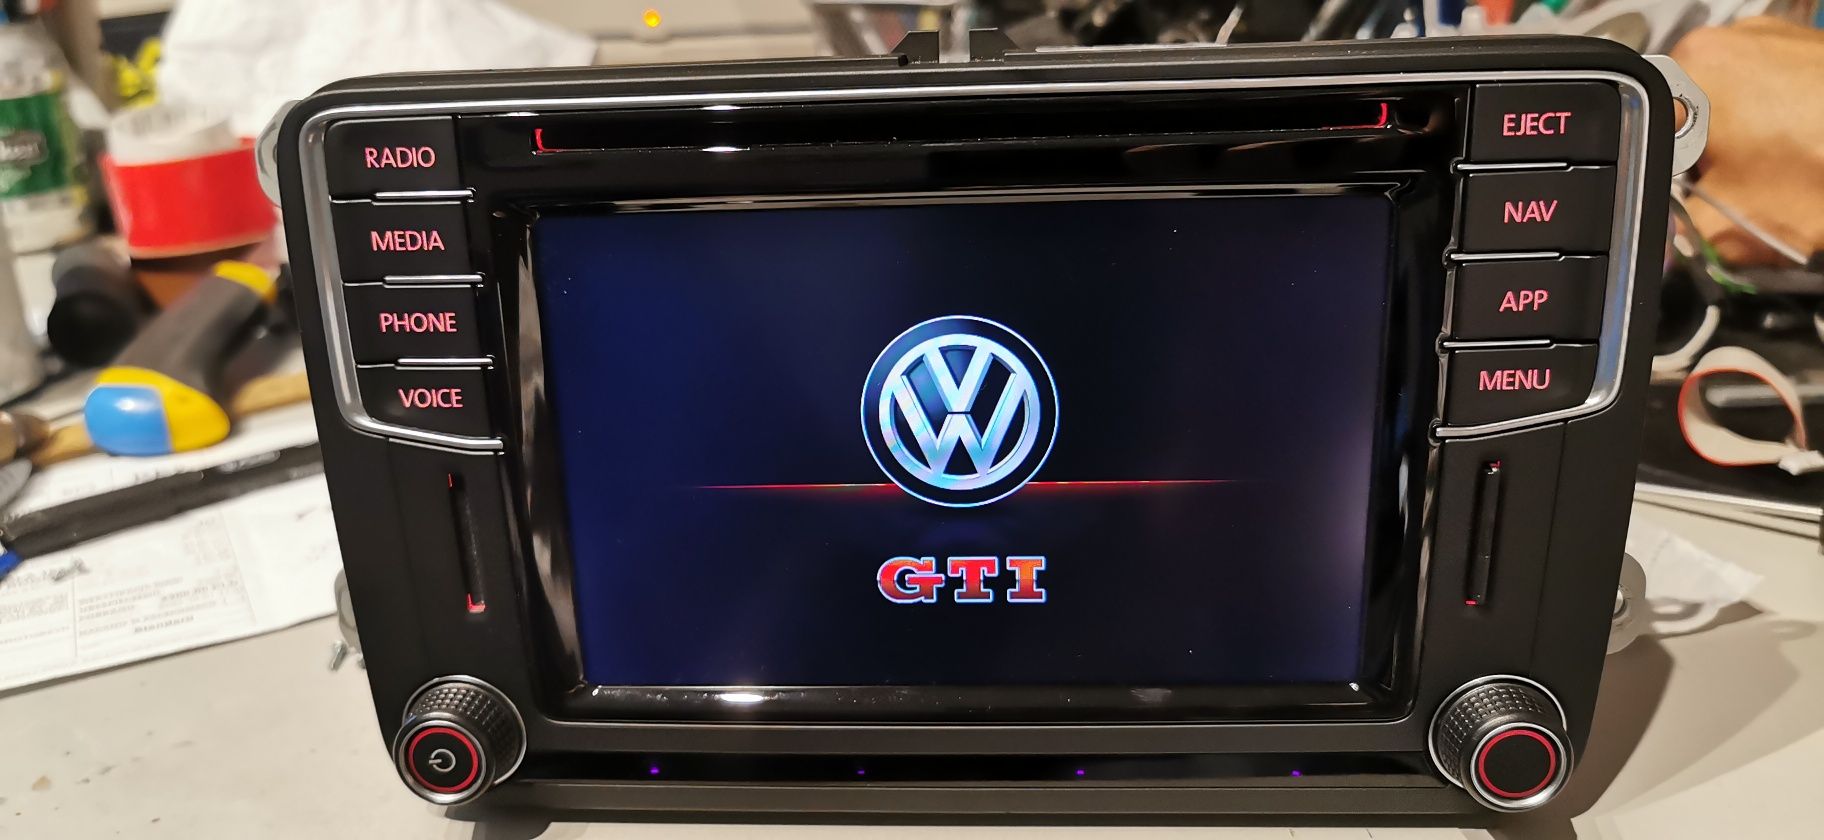 Nawigacja VW Seat Skoda Discover Media PQ dab